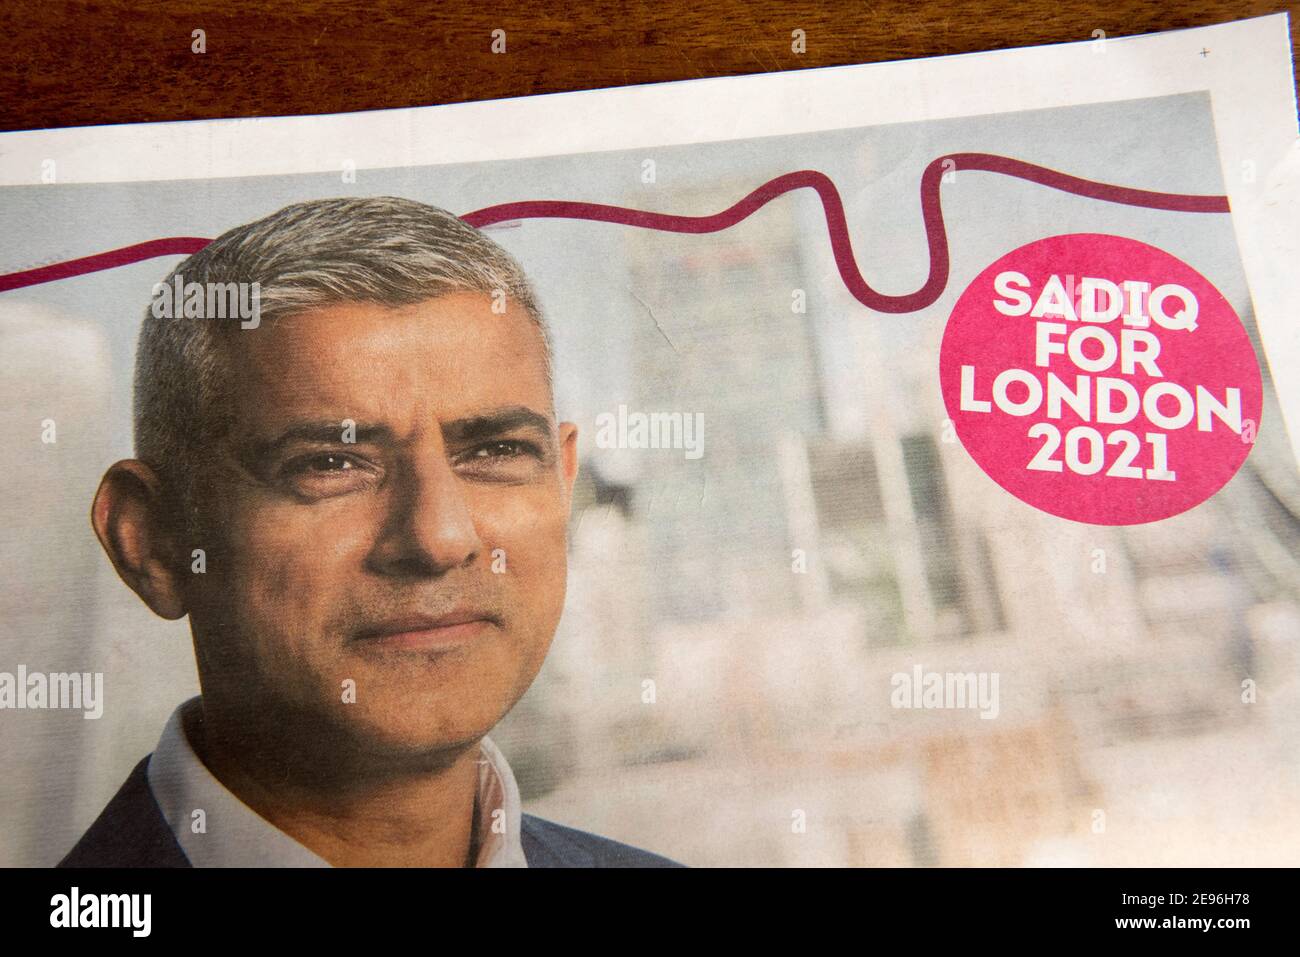 London Bürgermeister und Versammlung Wahl Flyer, Flugblatt oder Zeitung geleitet Sadiq für London 2021. Die Wahlen werden am 6th. Mai stattfinden. England Großbritannien Großbritannien. Nur für redaktionelle Zwecke Stockfoto